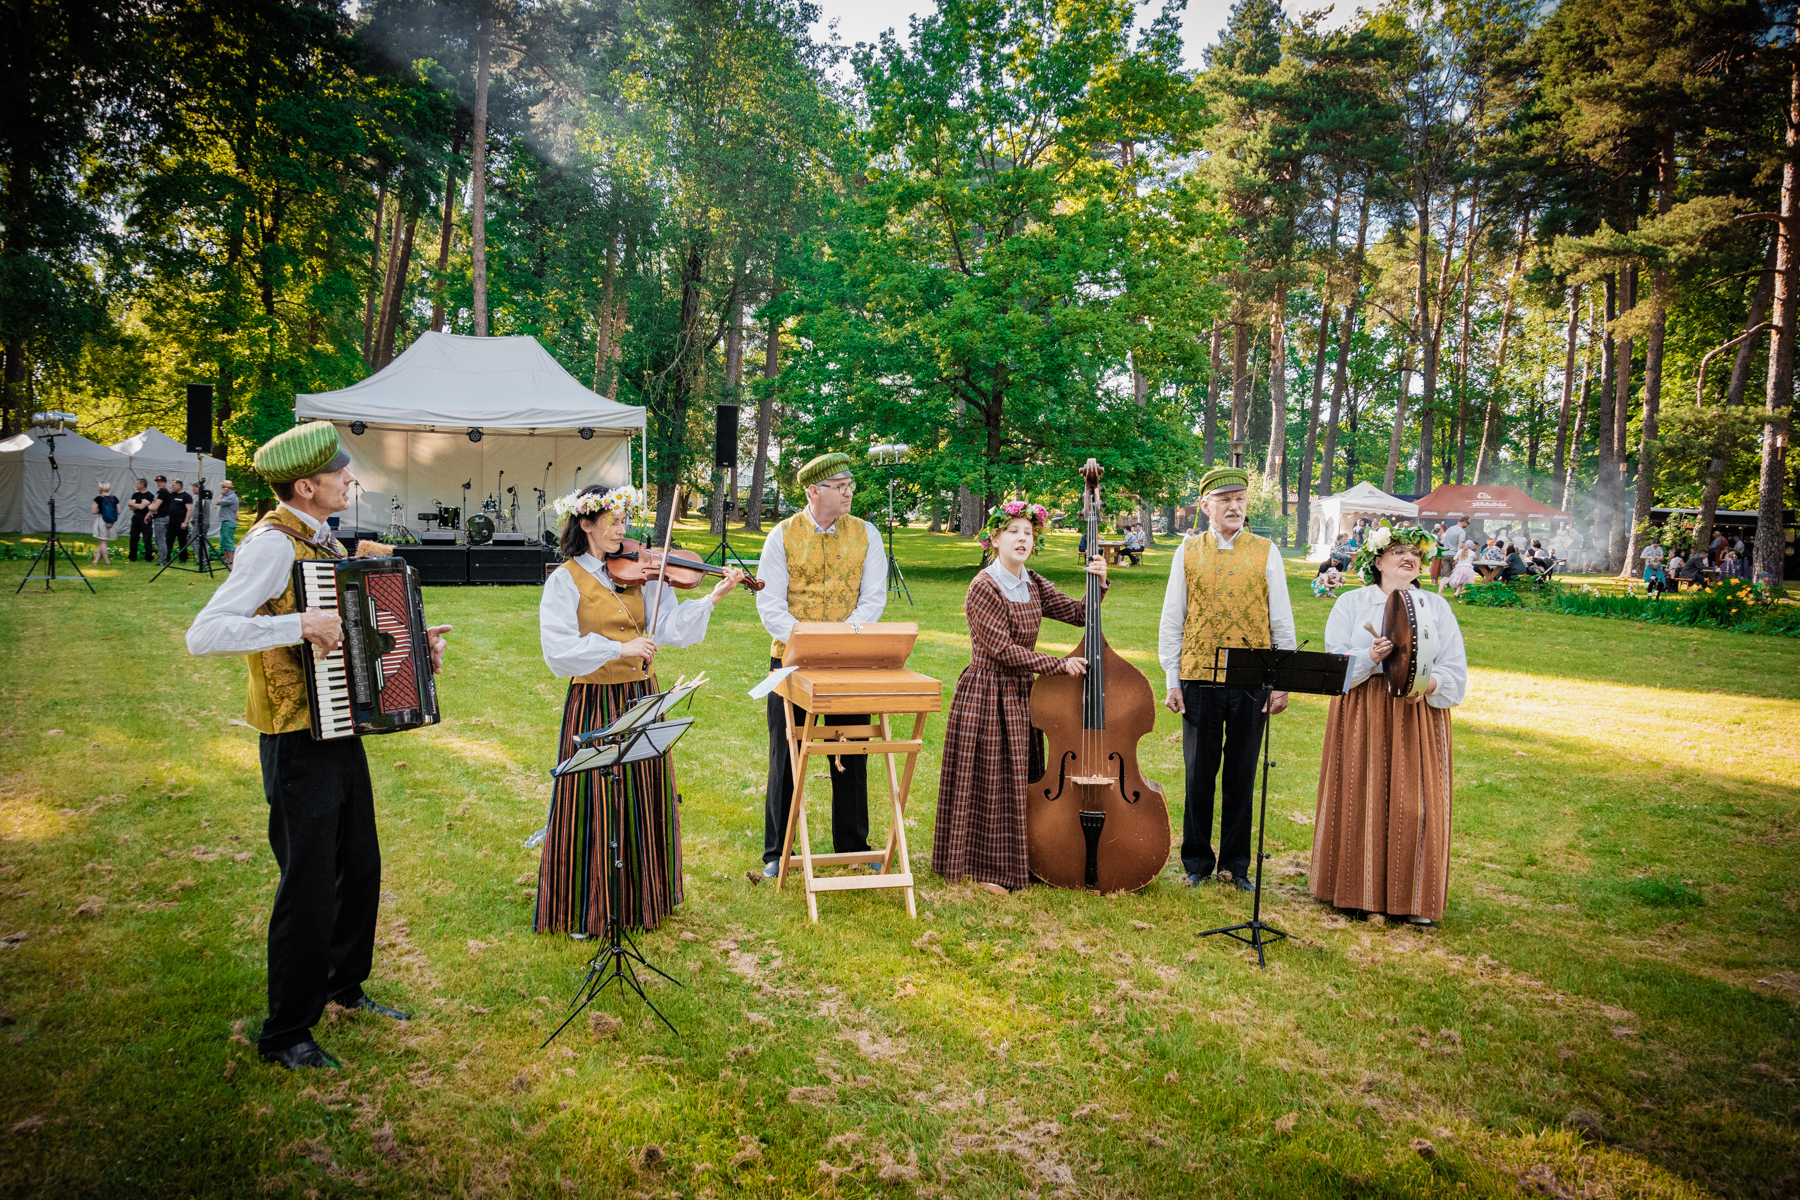 Līdz 10. jūlijam vairākās Latvijas pilsētās norisinās Starptautiskais folkloras festivāls “Baltica”. Šogad festivālā piedalās vairāk nekā 250 folkloras kopas un etnogrāfiskie ansambļi, tiekoties koncertos, notikumos un aktivitātēs.